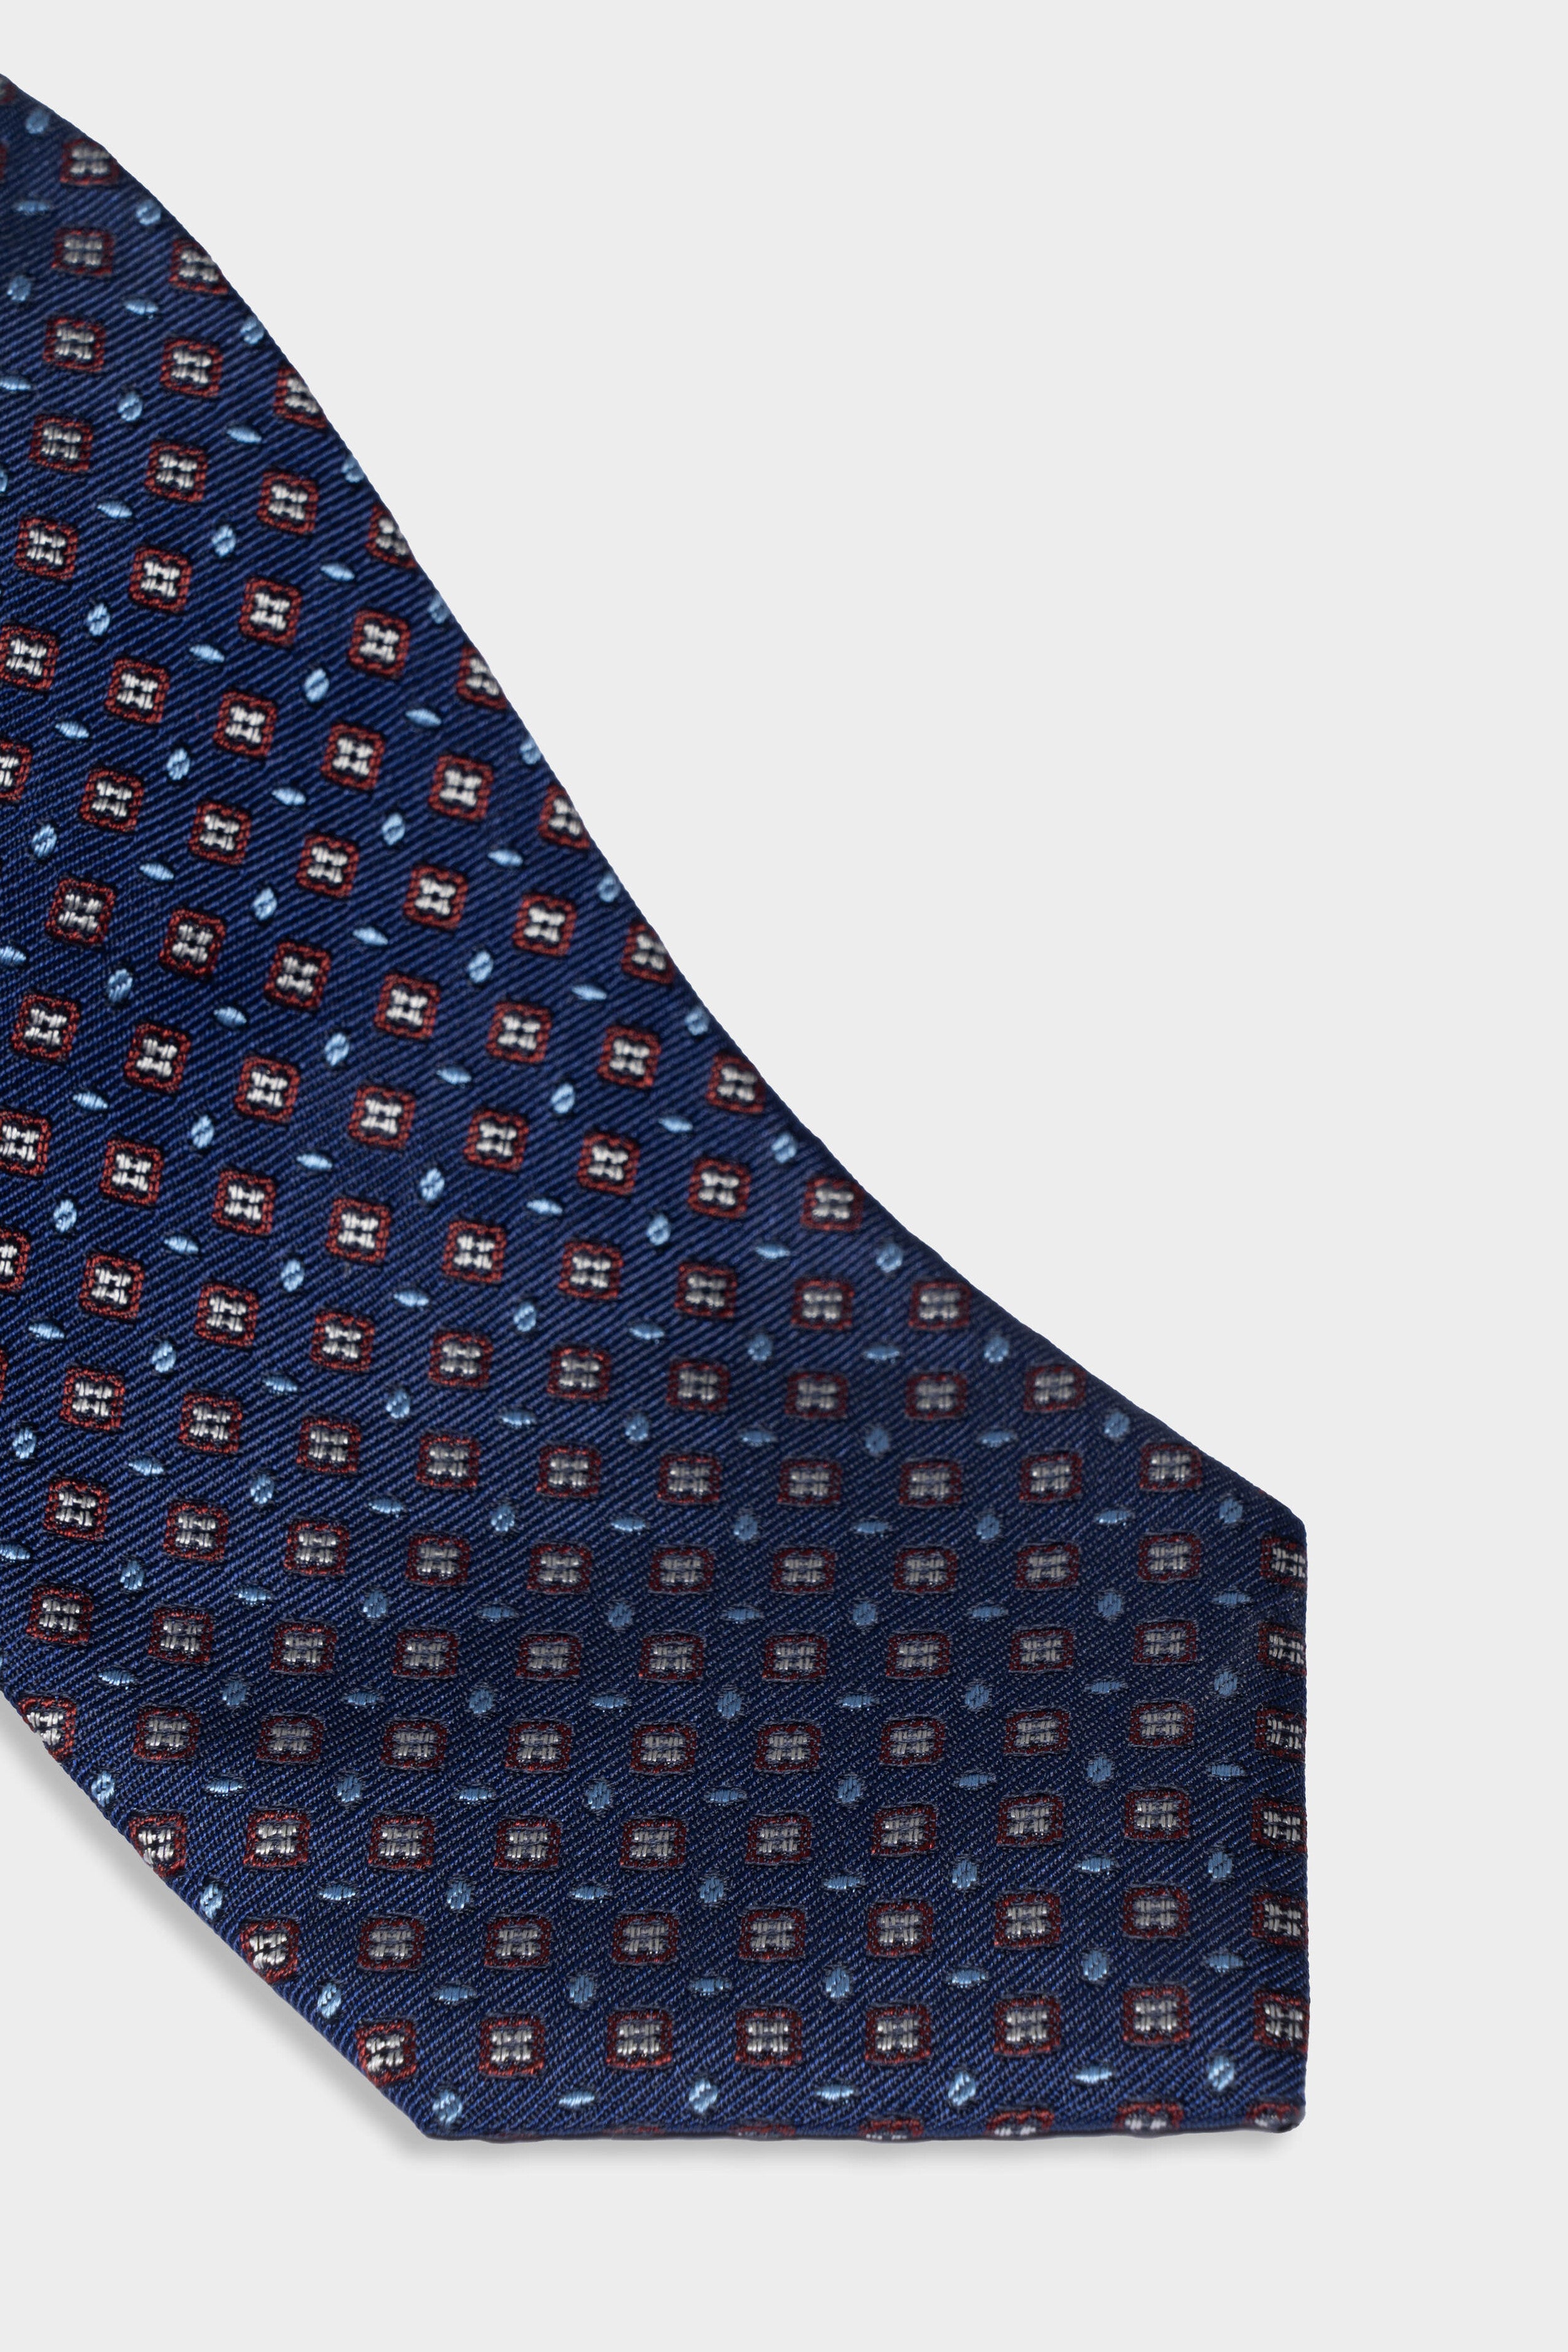 Tie in silk for man - Blue pattern